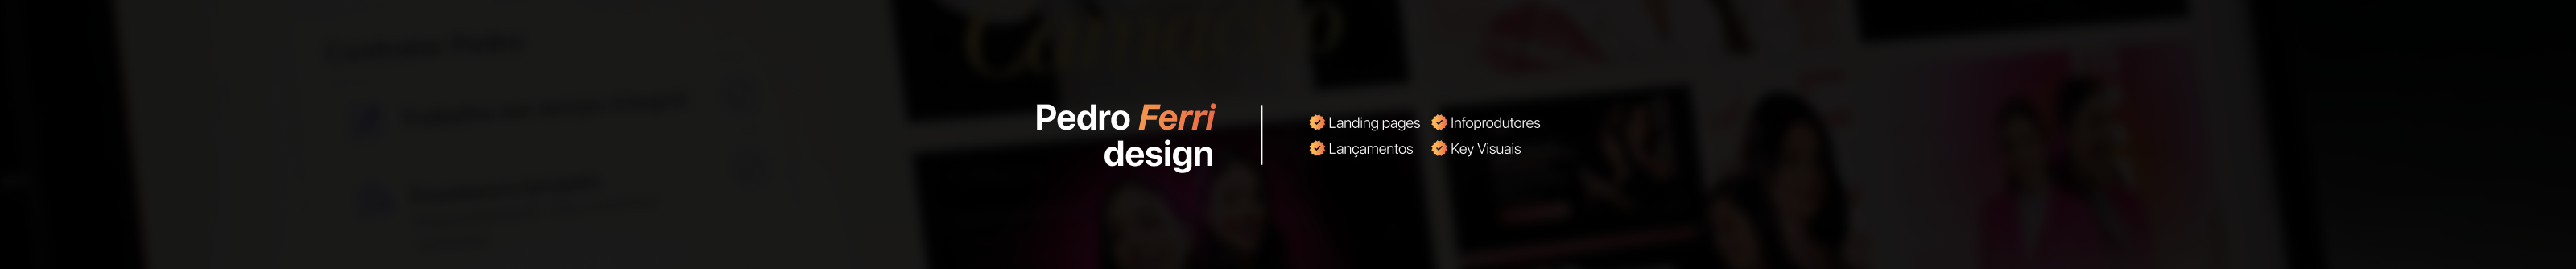 Banner de perfil de Pedro | Designer & Web